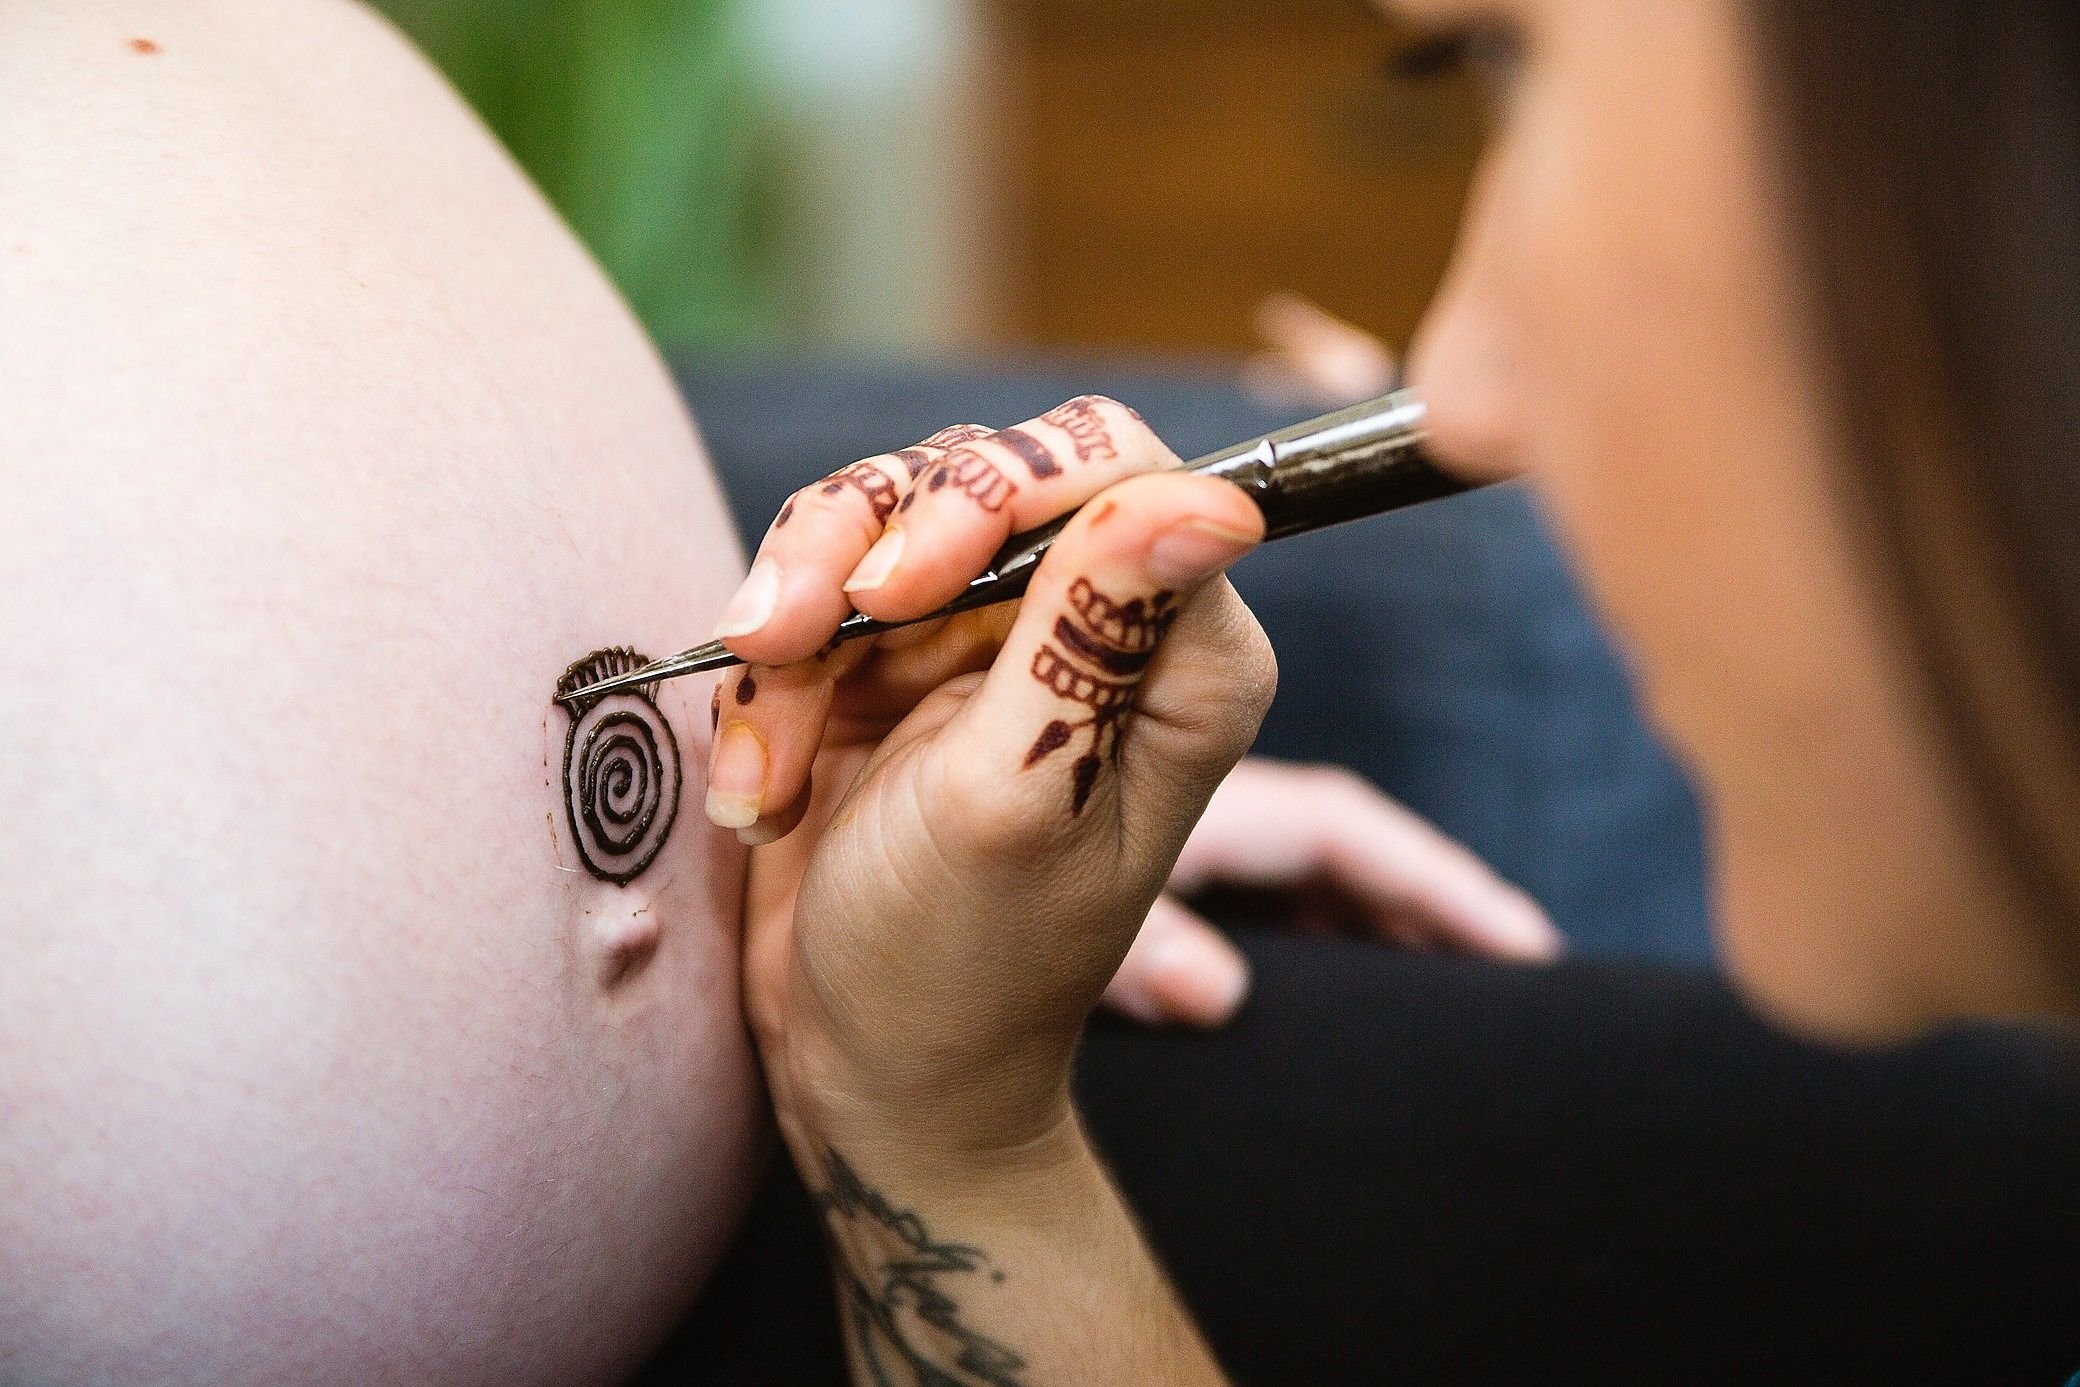  Maternity Henna by Phoenix based Henna Artist; Jennifer Lind Schutsky images by PMA Brand Photography  